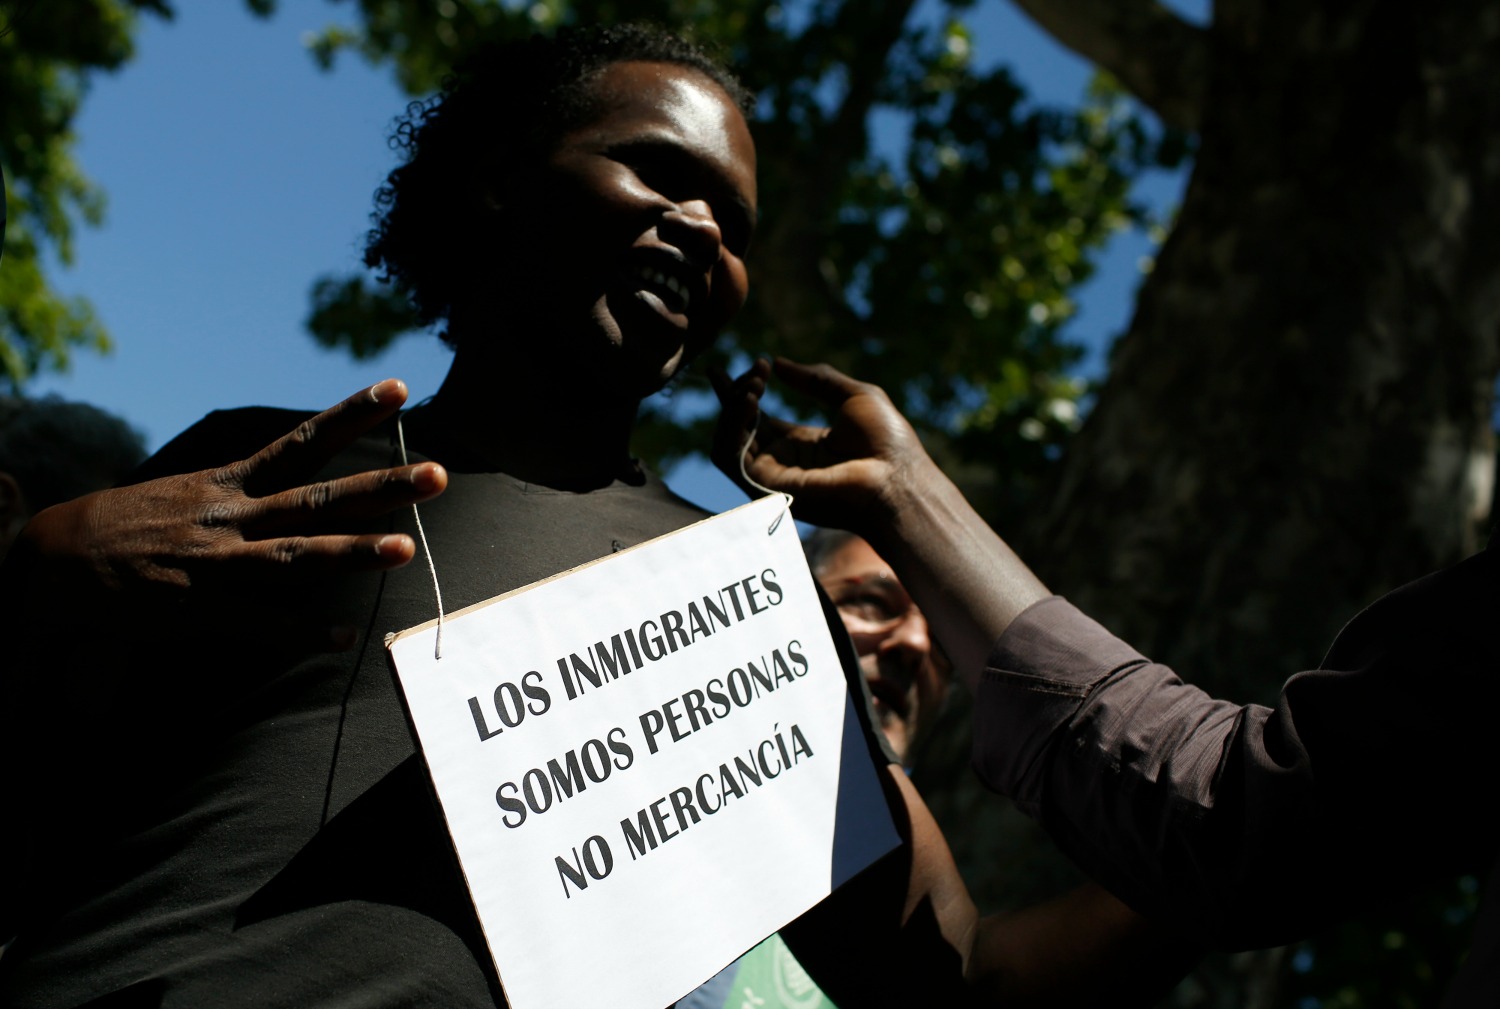 España ofrece garantías "insuficientes" a los inmigrantes deportados - Europa